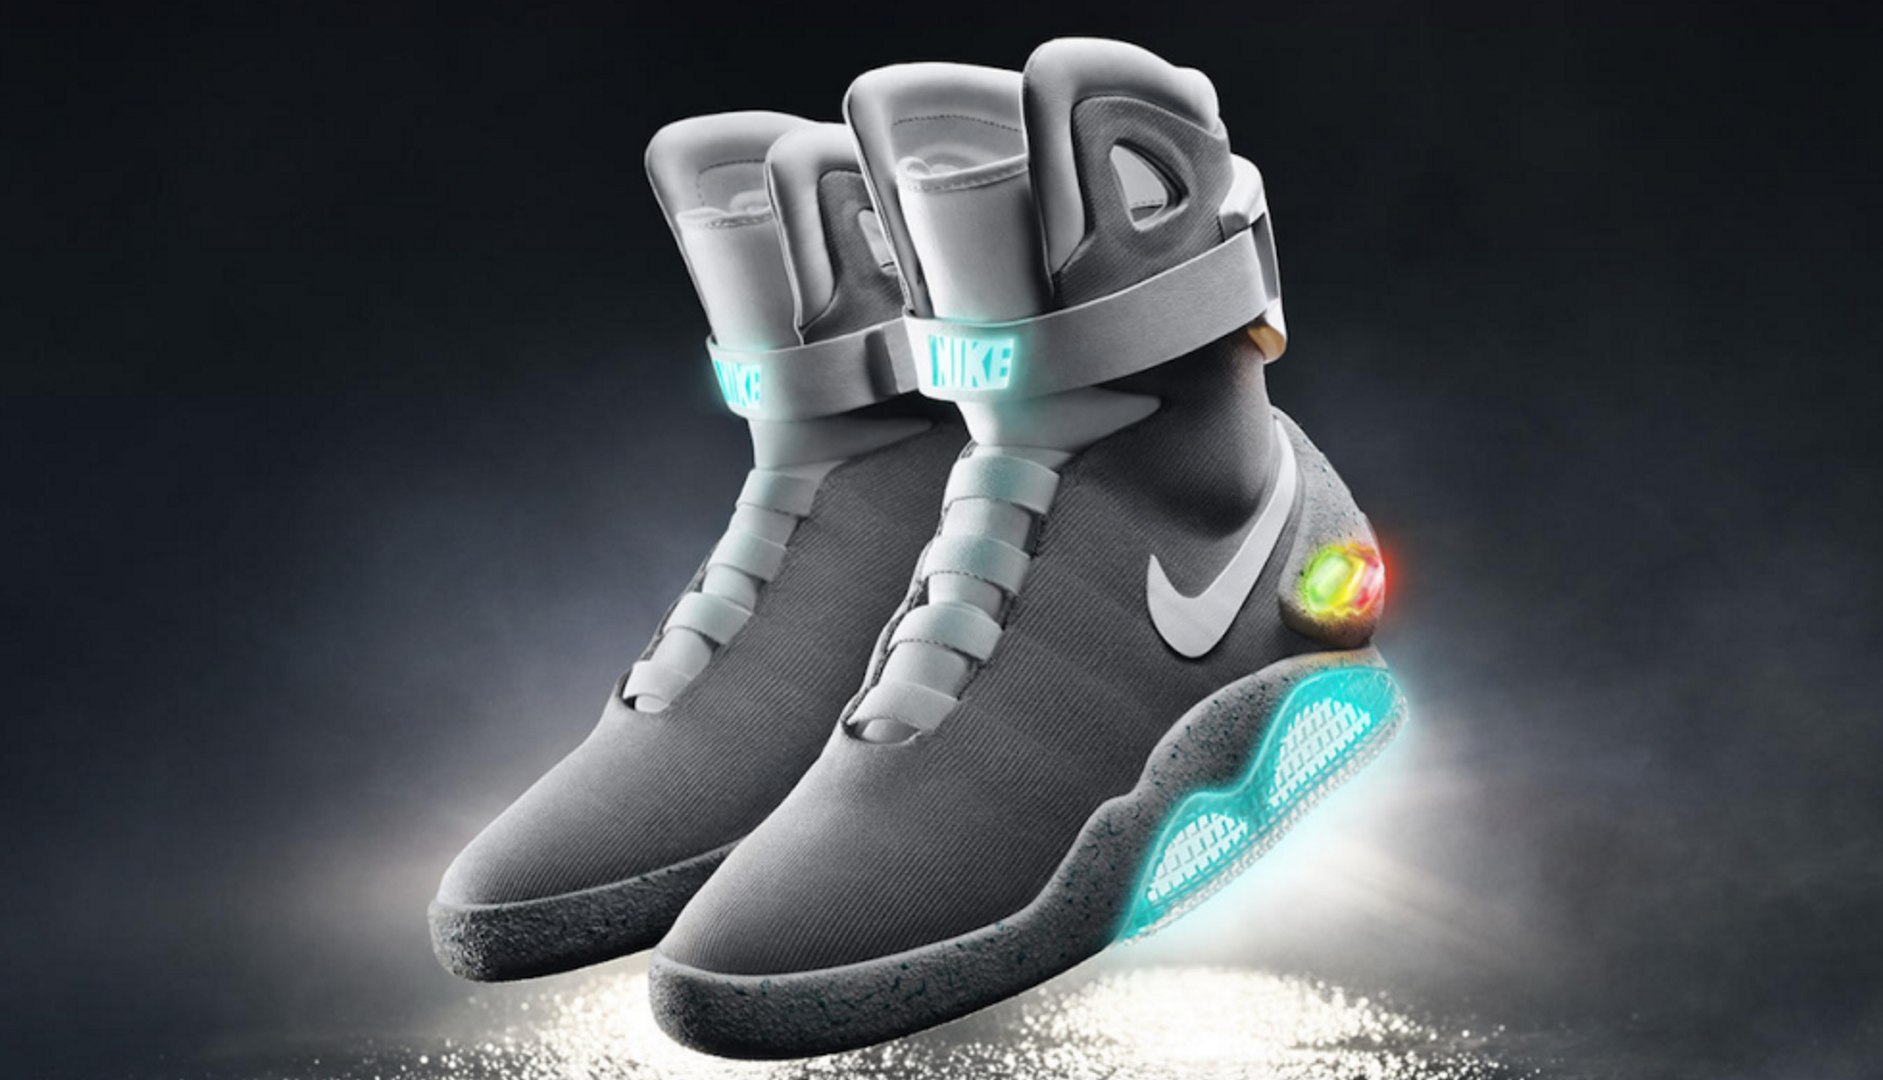 Llegan las Nike HyperAdapt 1.0, las zapatillas robocordones - Vídeo